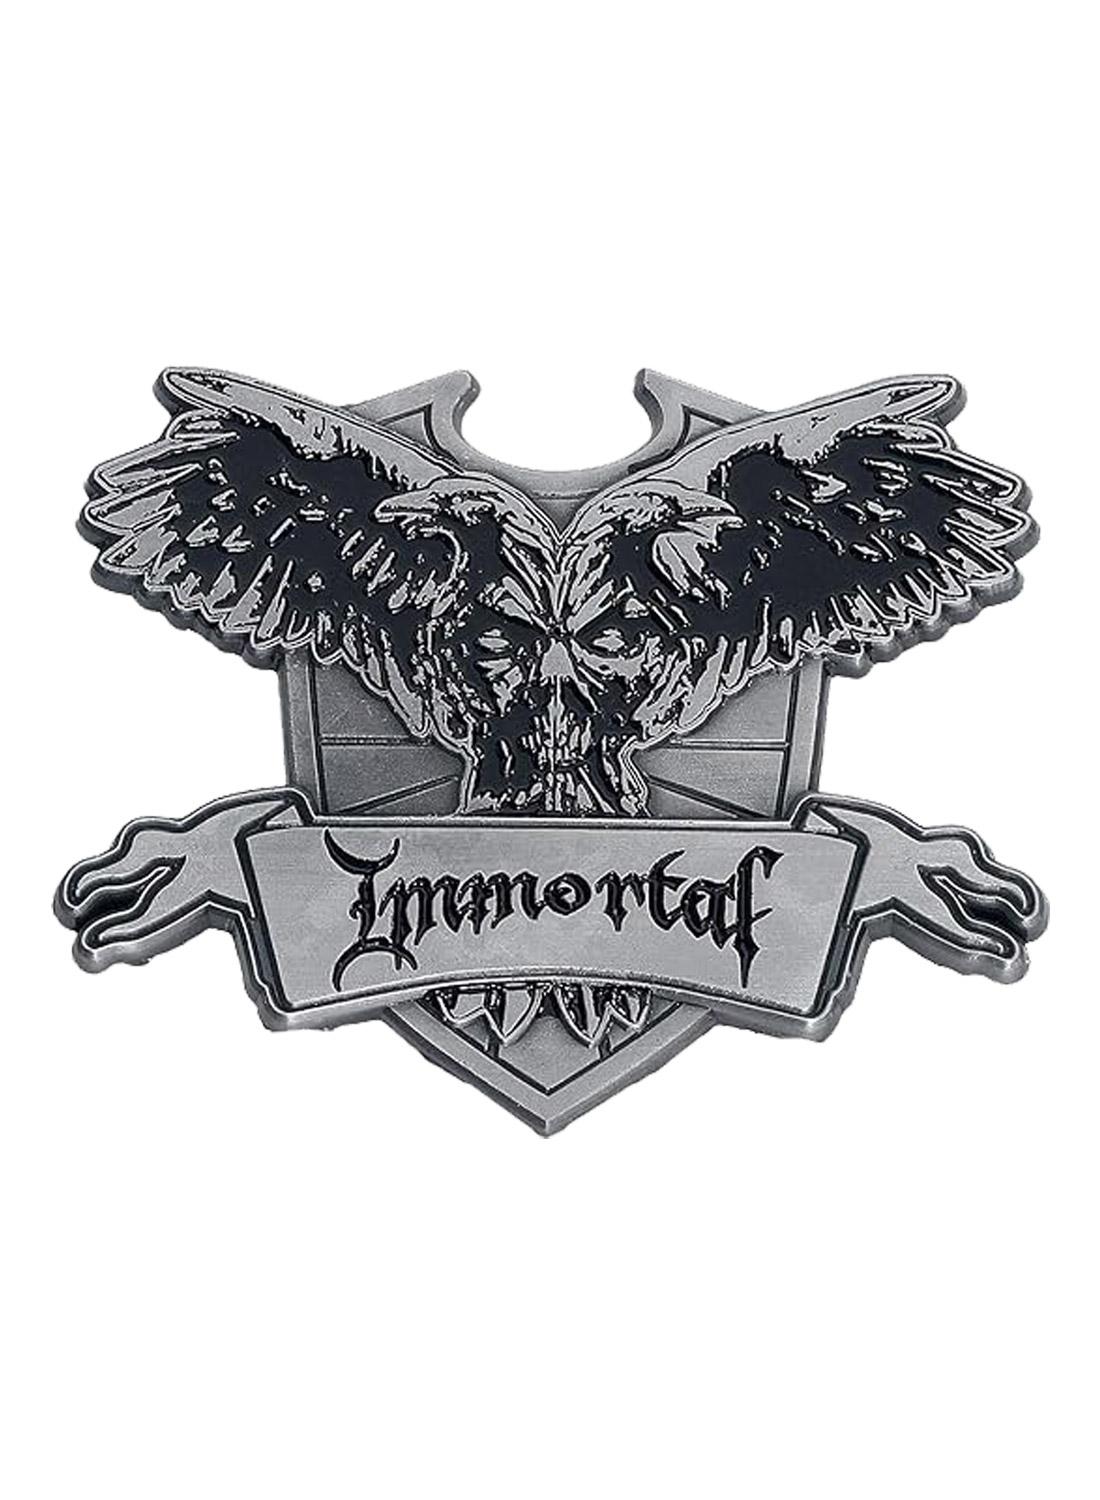 Immortal Crest Metal Pin Badge